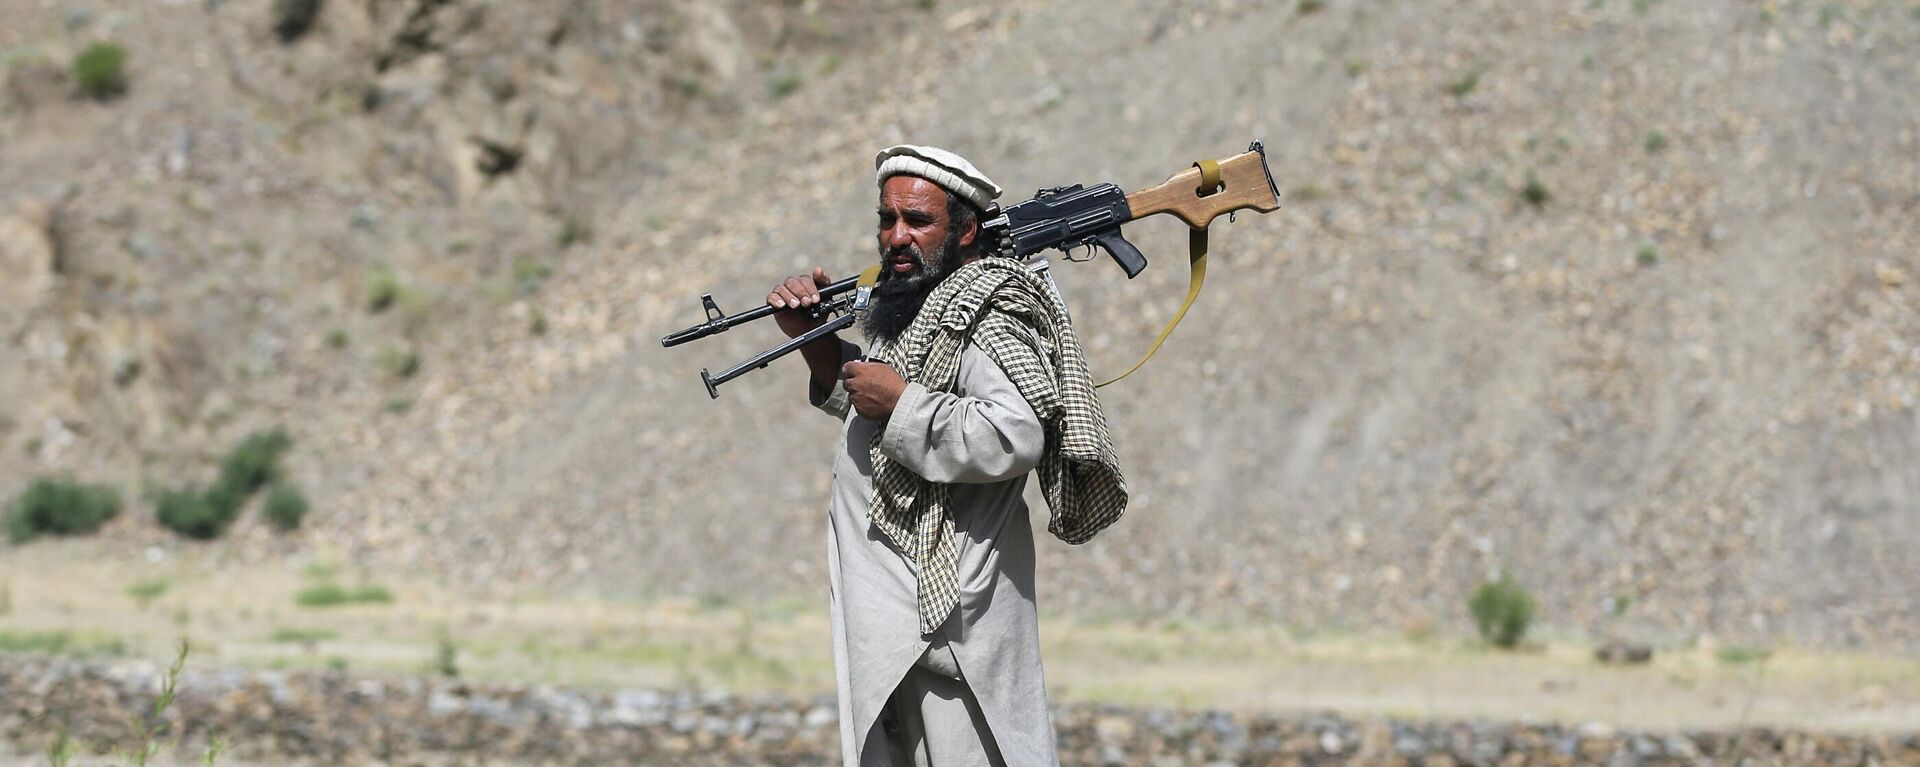 Вооруженный человек, выступающий против восстания талибов - Sputnik Таджикистан, 1920, 18.07.2021